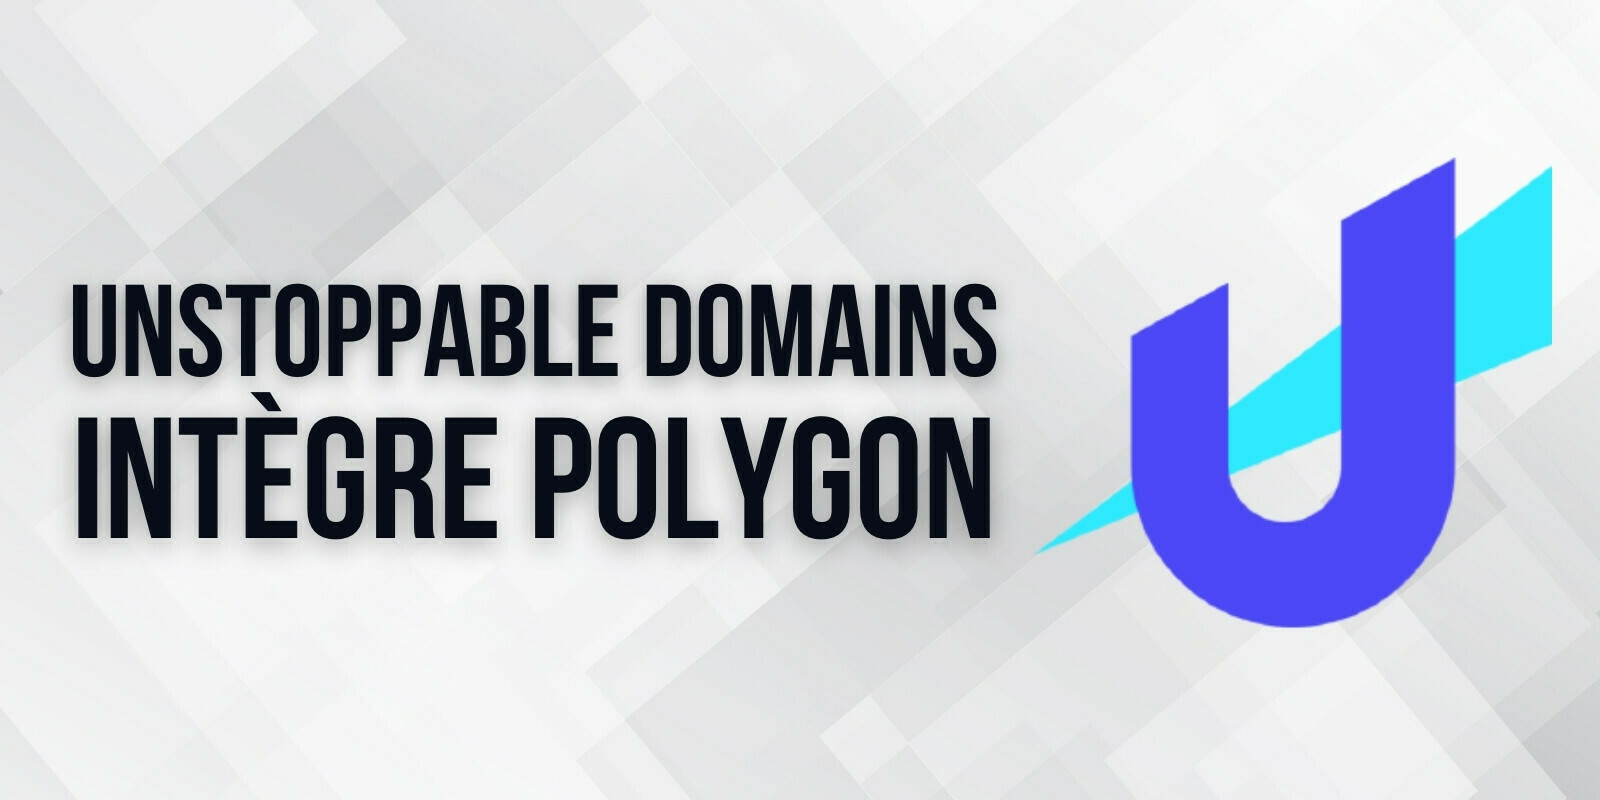 Unstoppable Domains intègre la solution de scalabilité Polygon (MATIC) pour réduire les frais